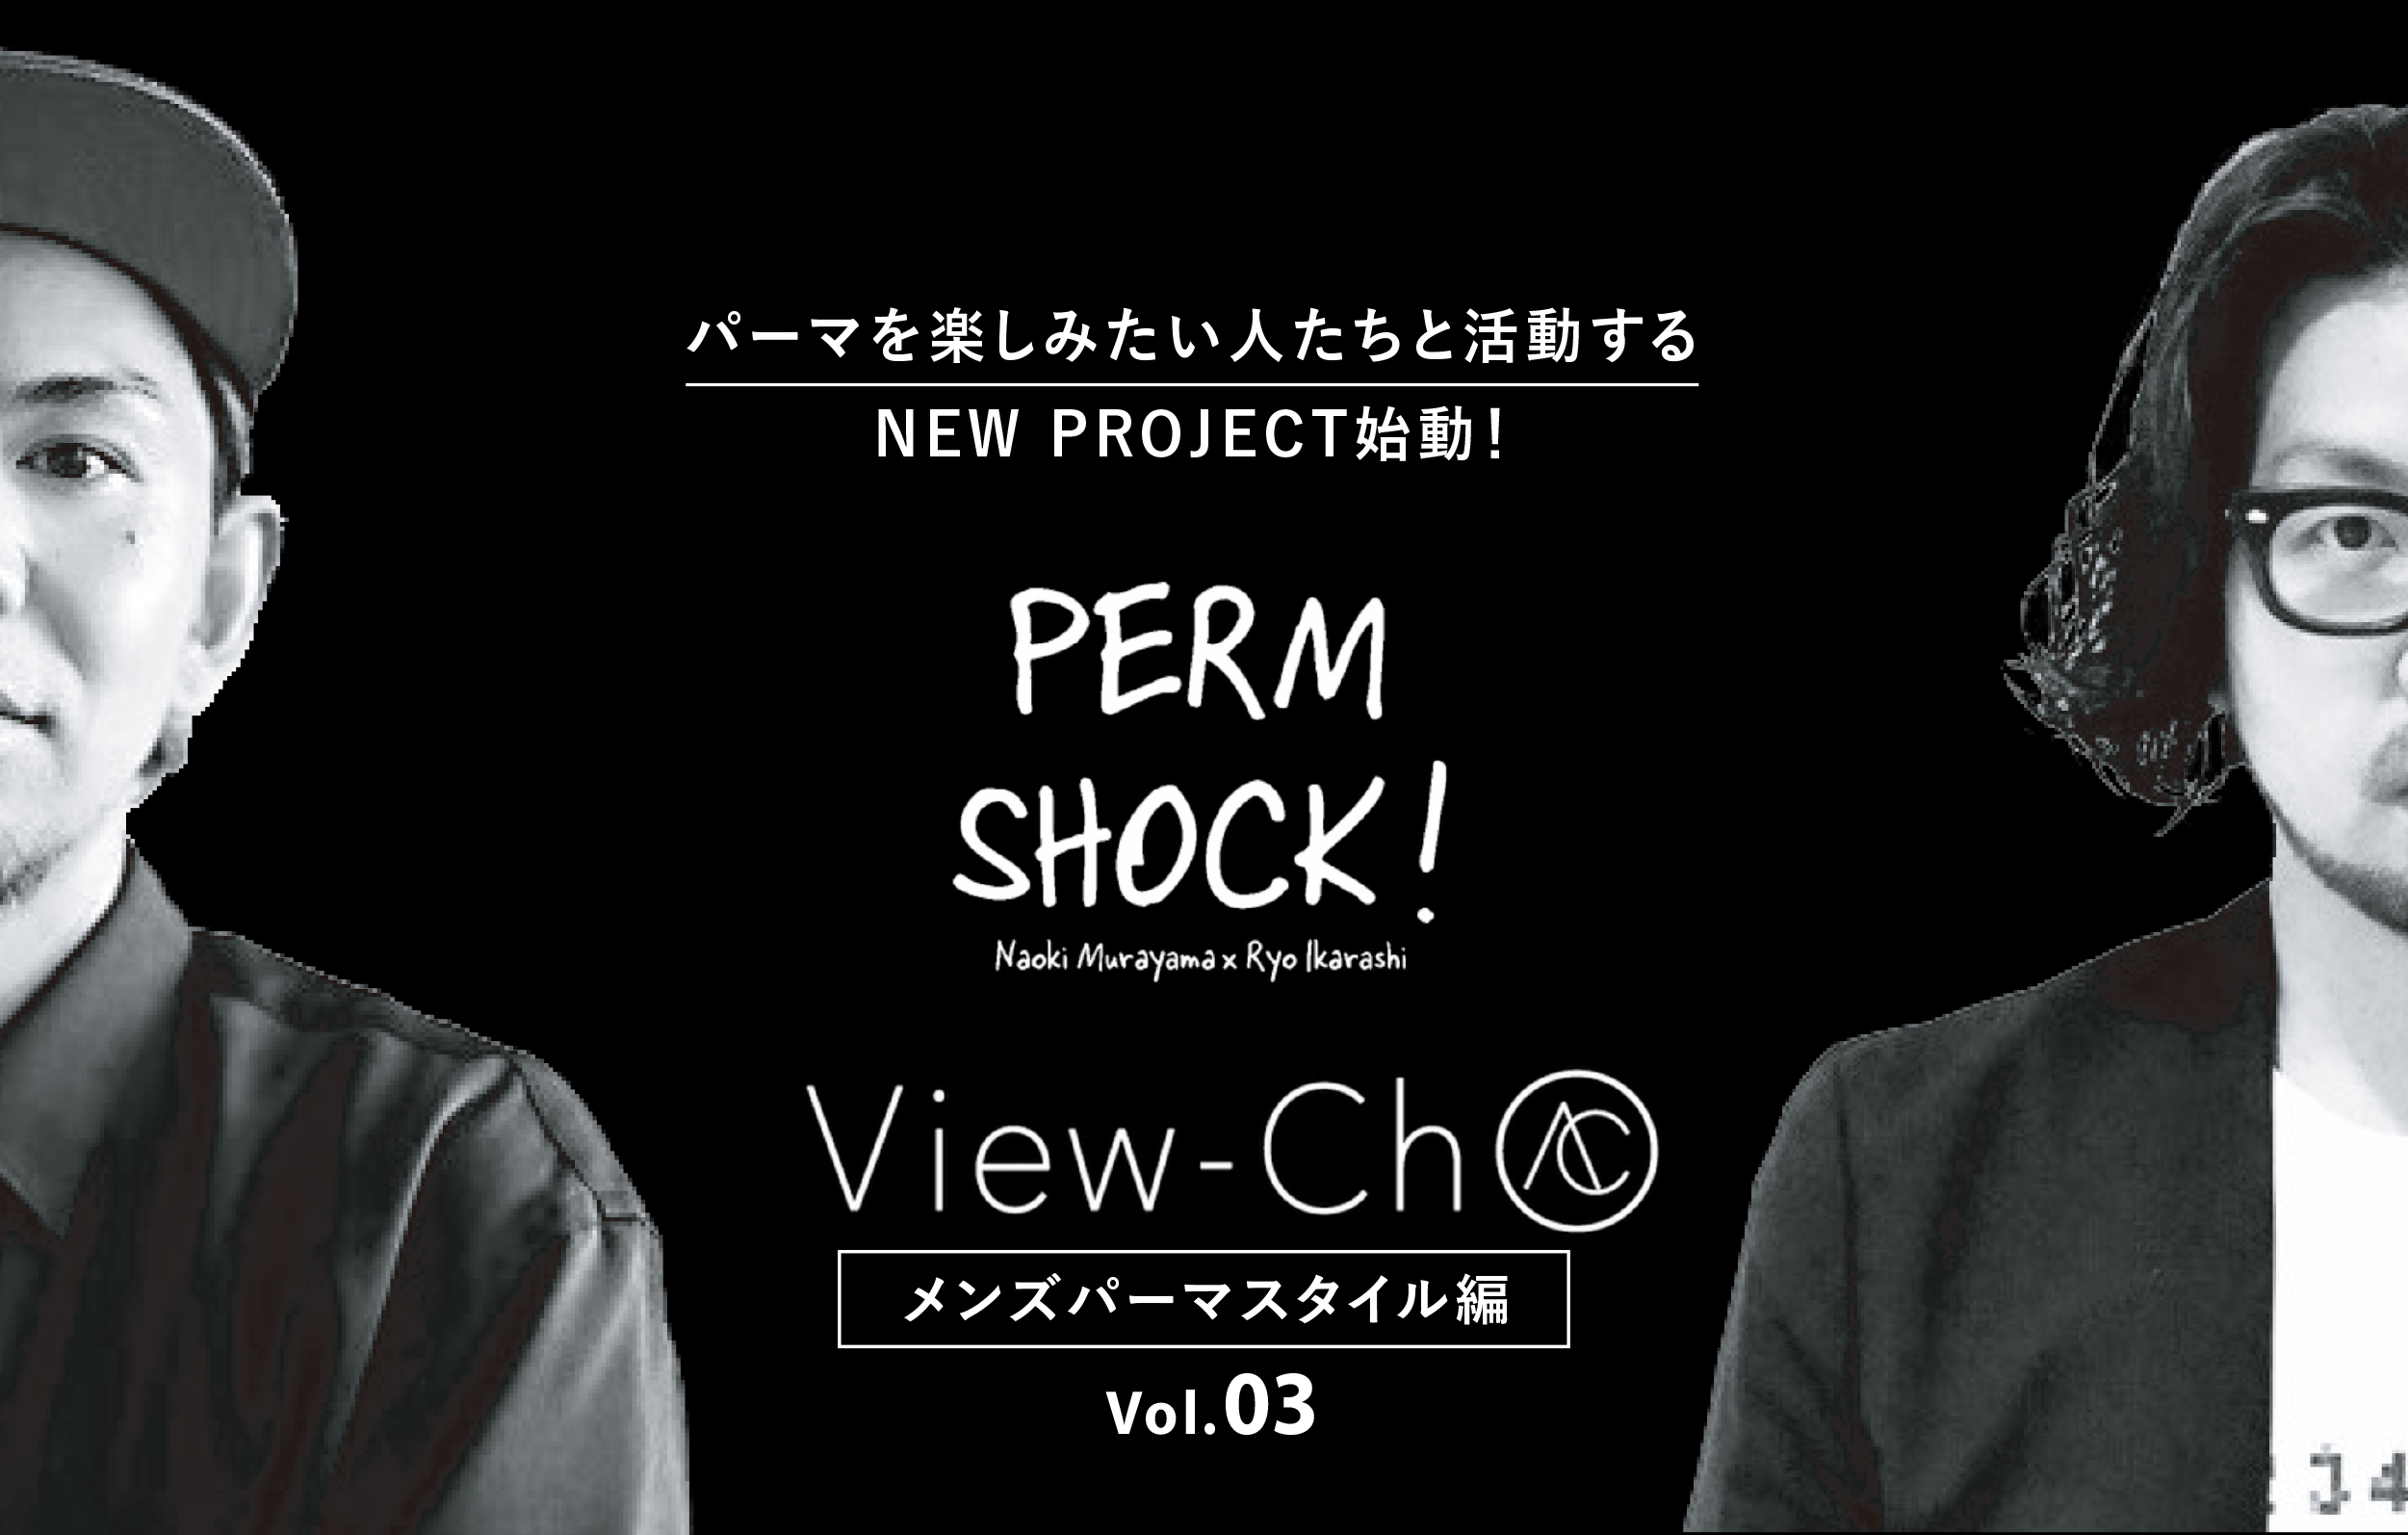 メンズパーマスタイルby PERM SHOCK vol.03